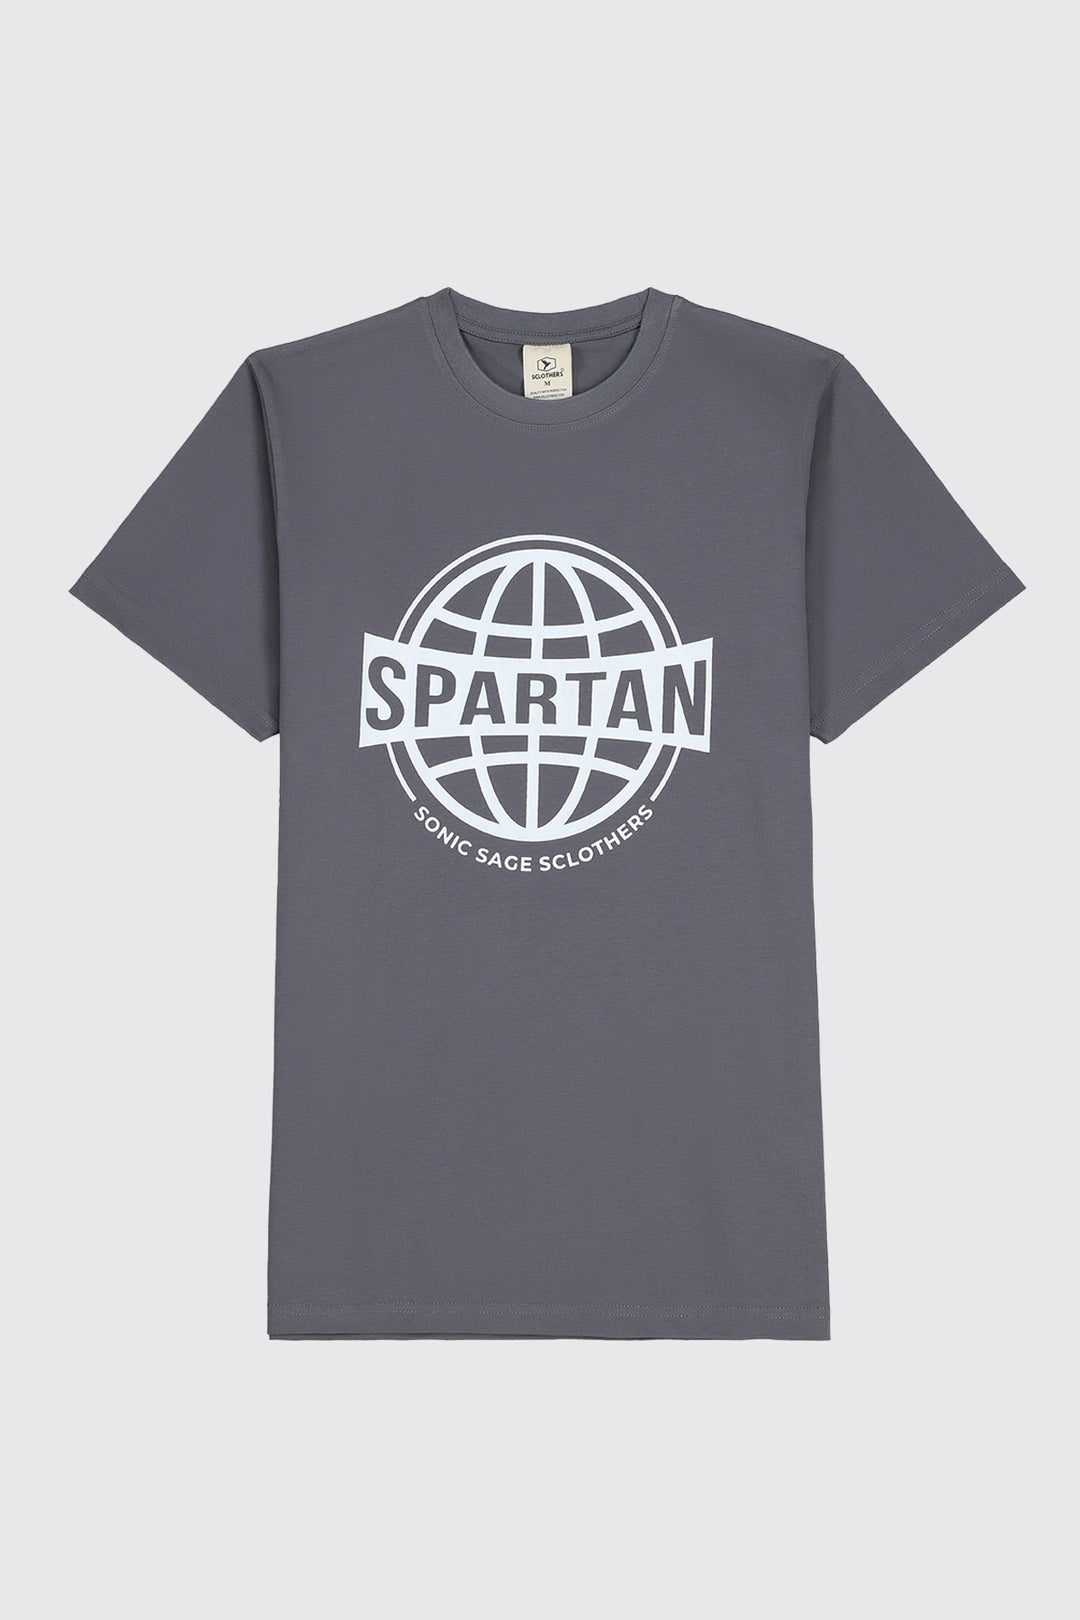 Basic Grey Spartan Graphic T-Shirt (Plus Size) - S23 - MT0307P